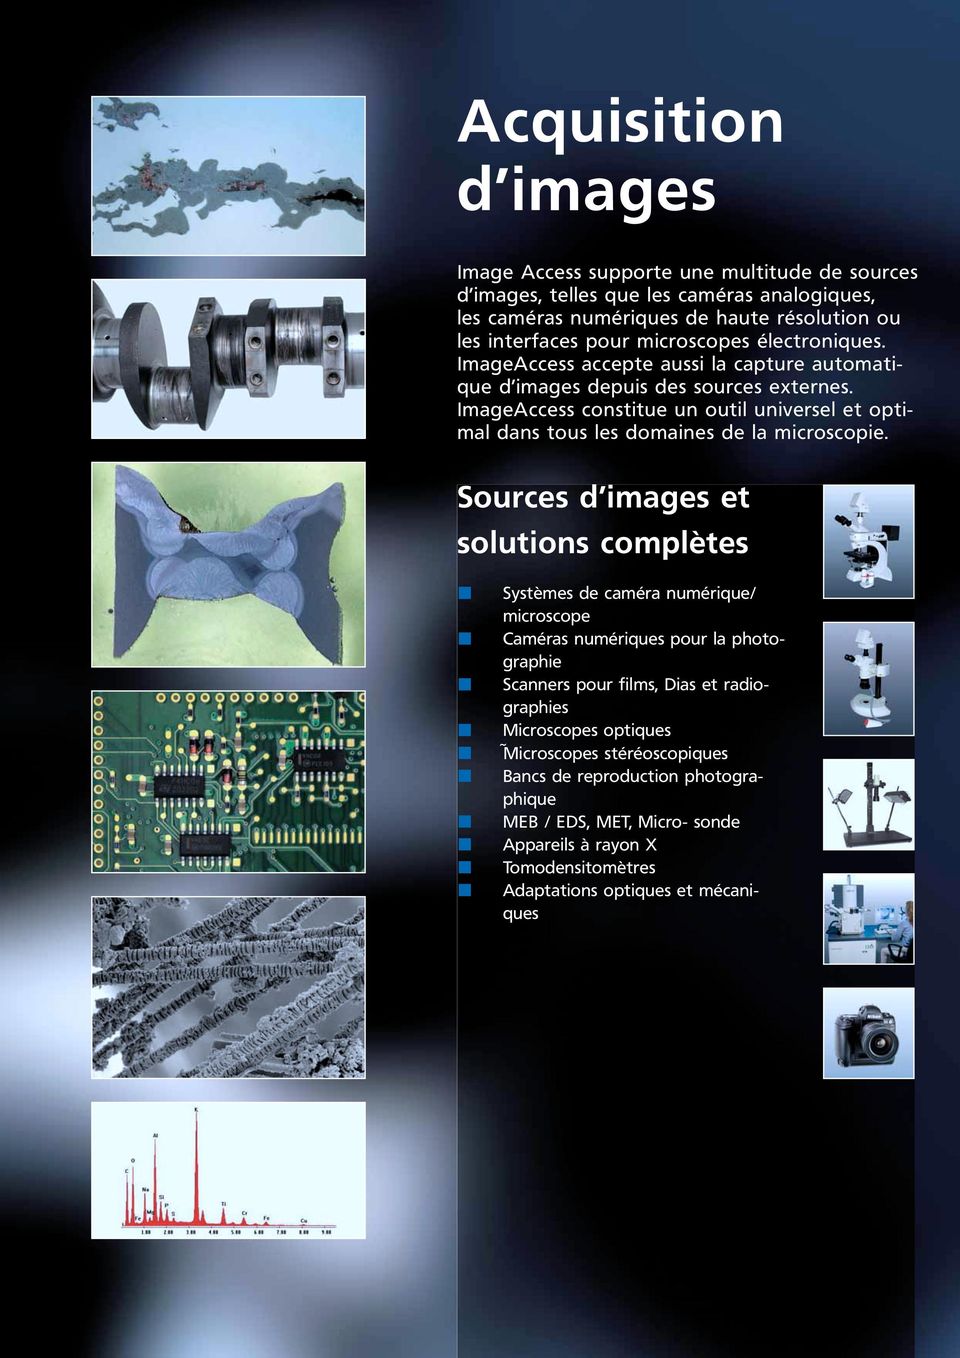 ImageAccess constitue un outil universel et optimal dans tous les domaines de la microscopie.